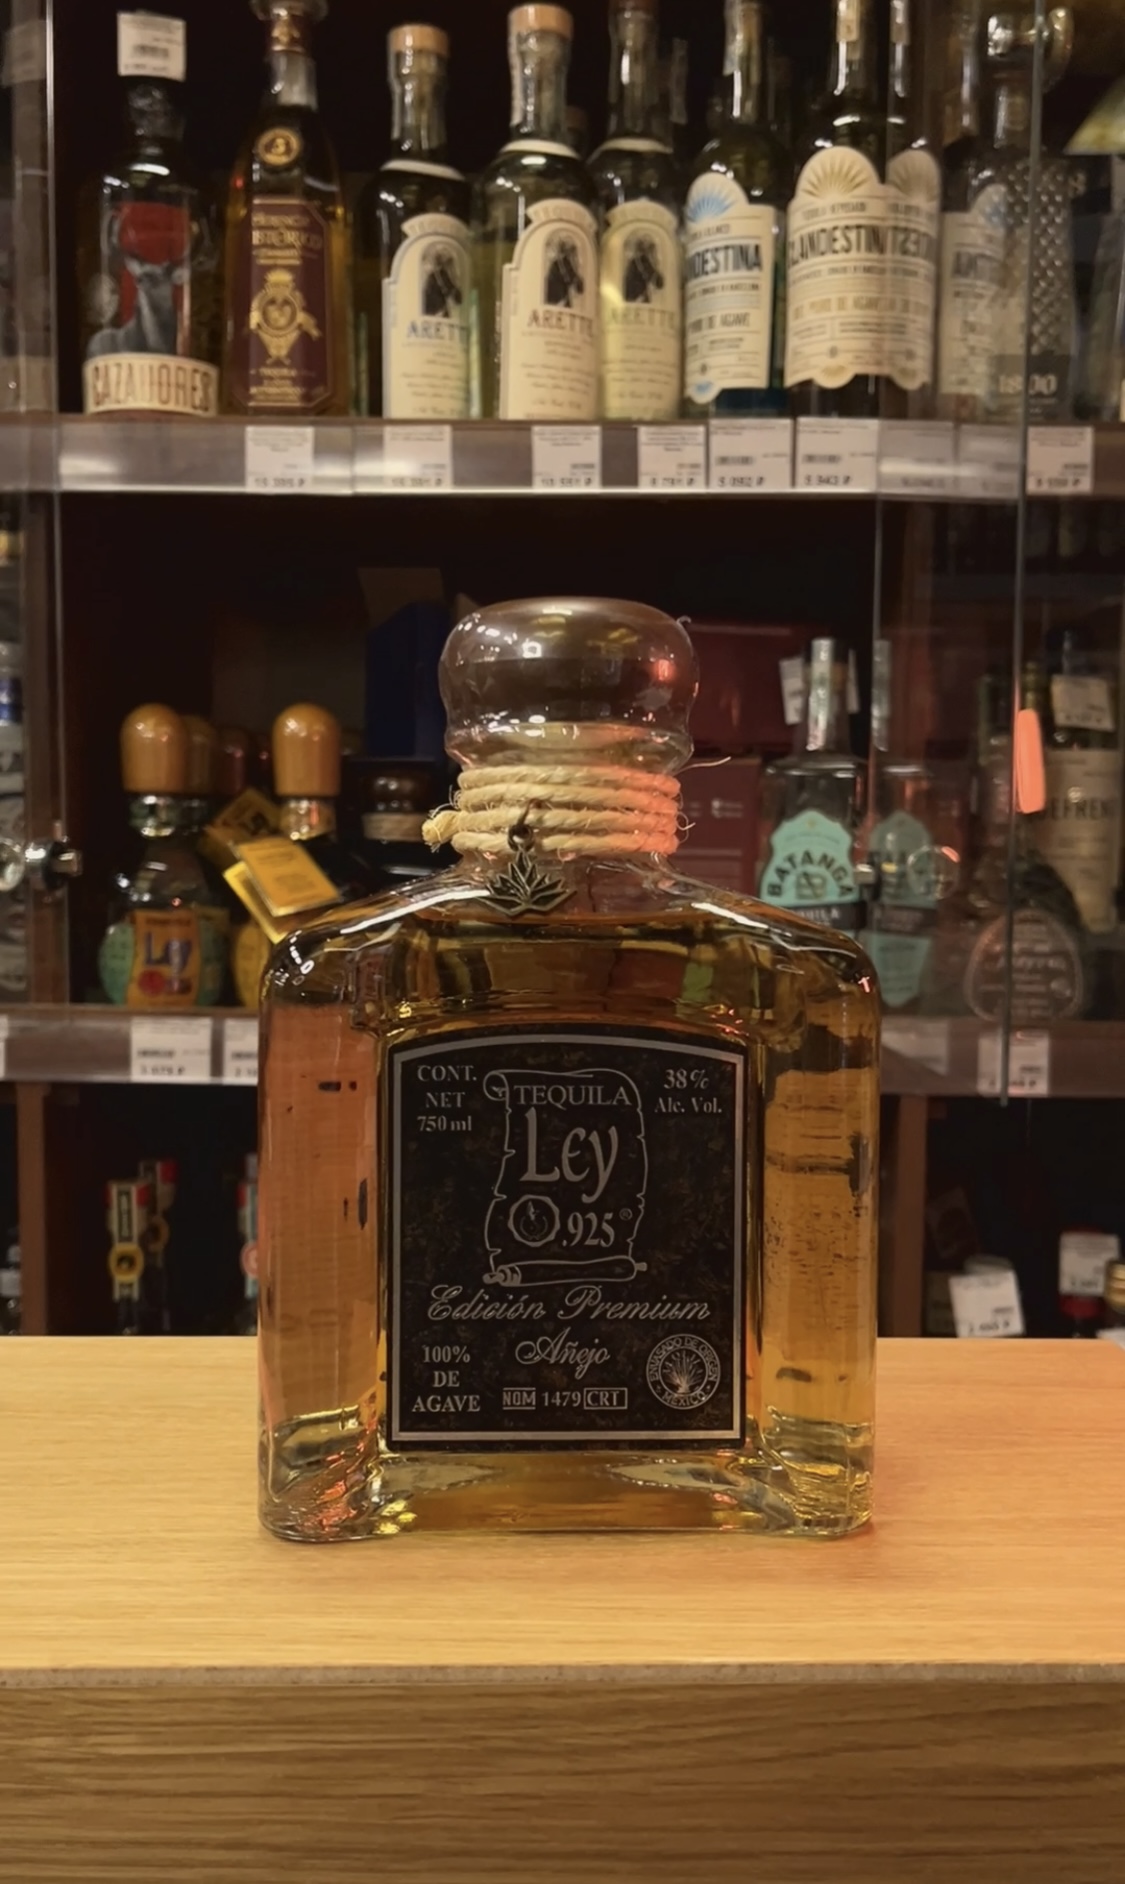 Tequila Ley 925 Anejo Текила Лей 925 Аньехо 0.75л в подарочной упаковке